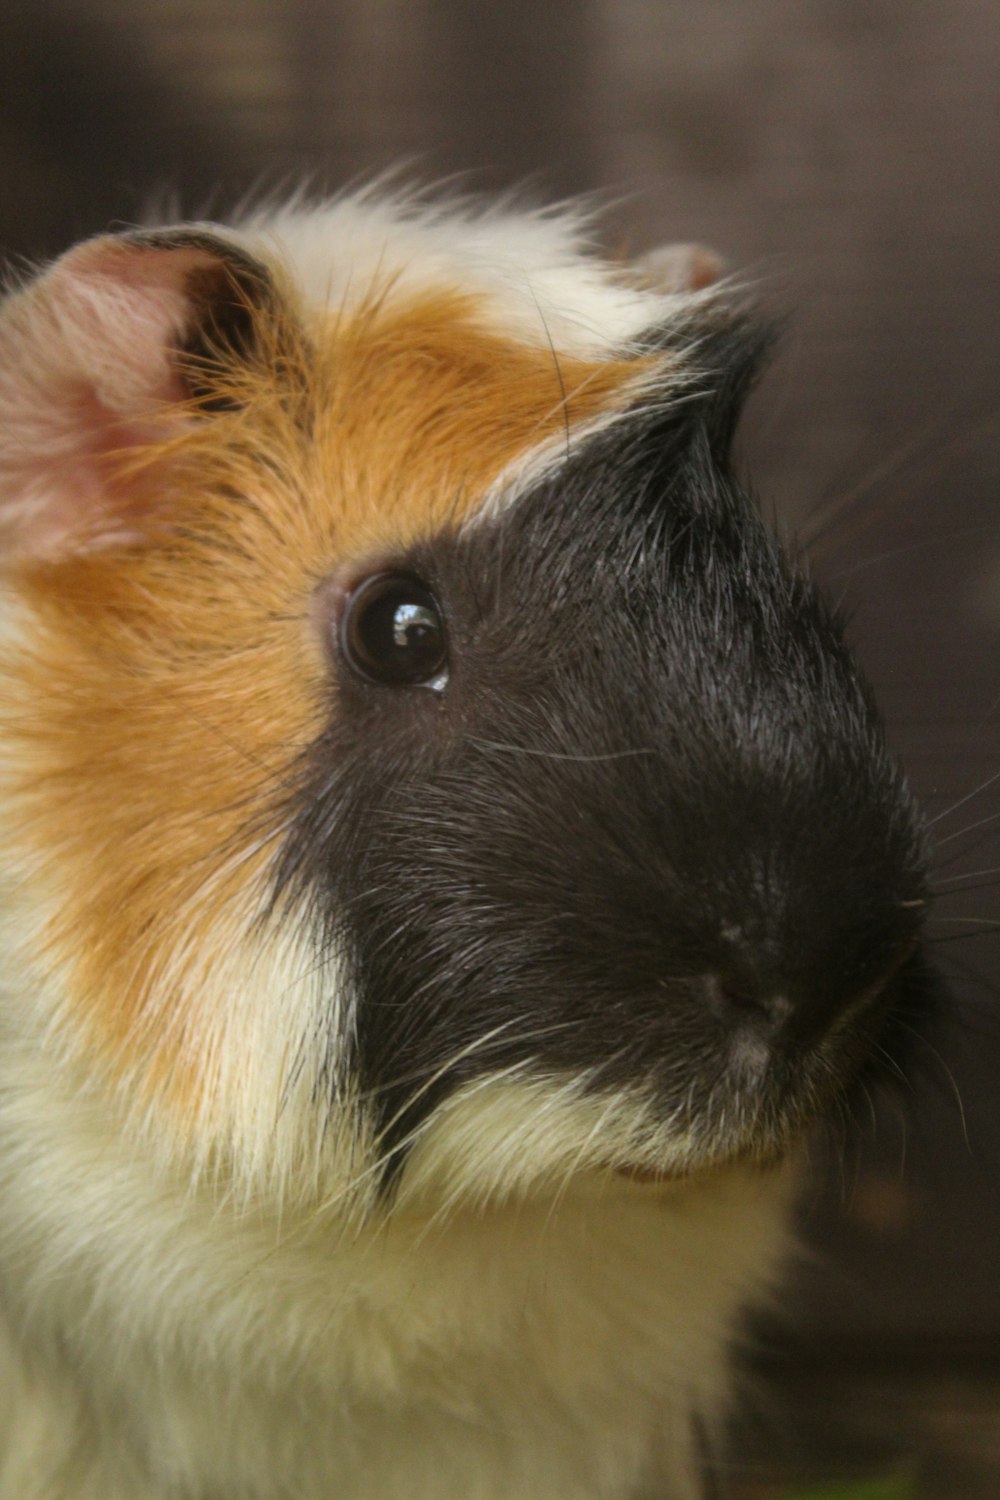 a close up of a guinea pig's face